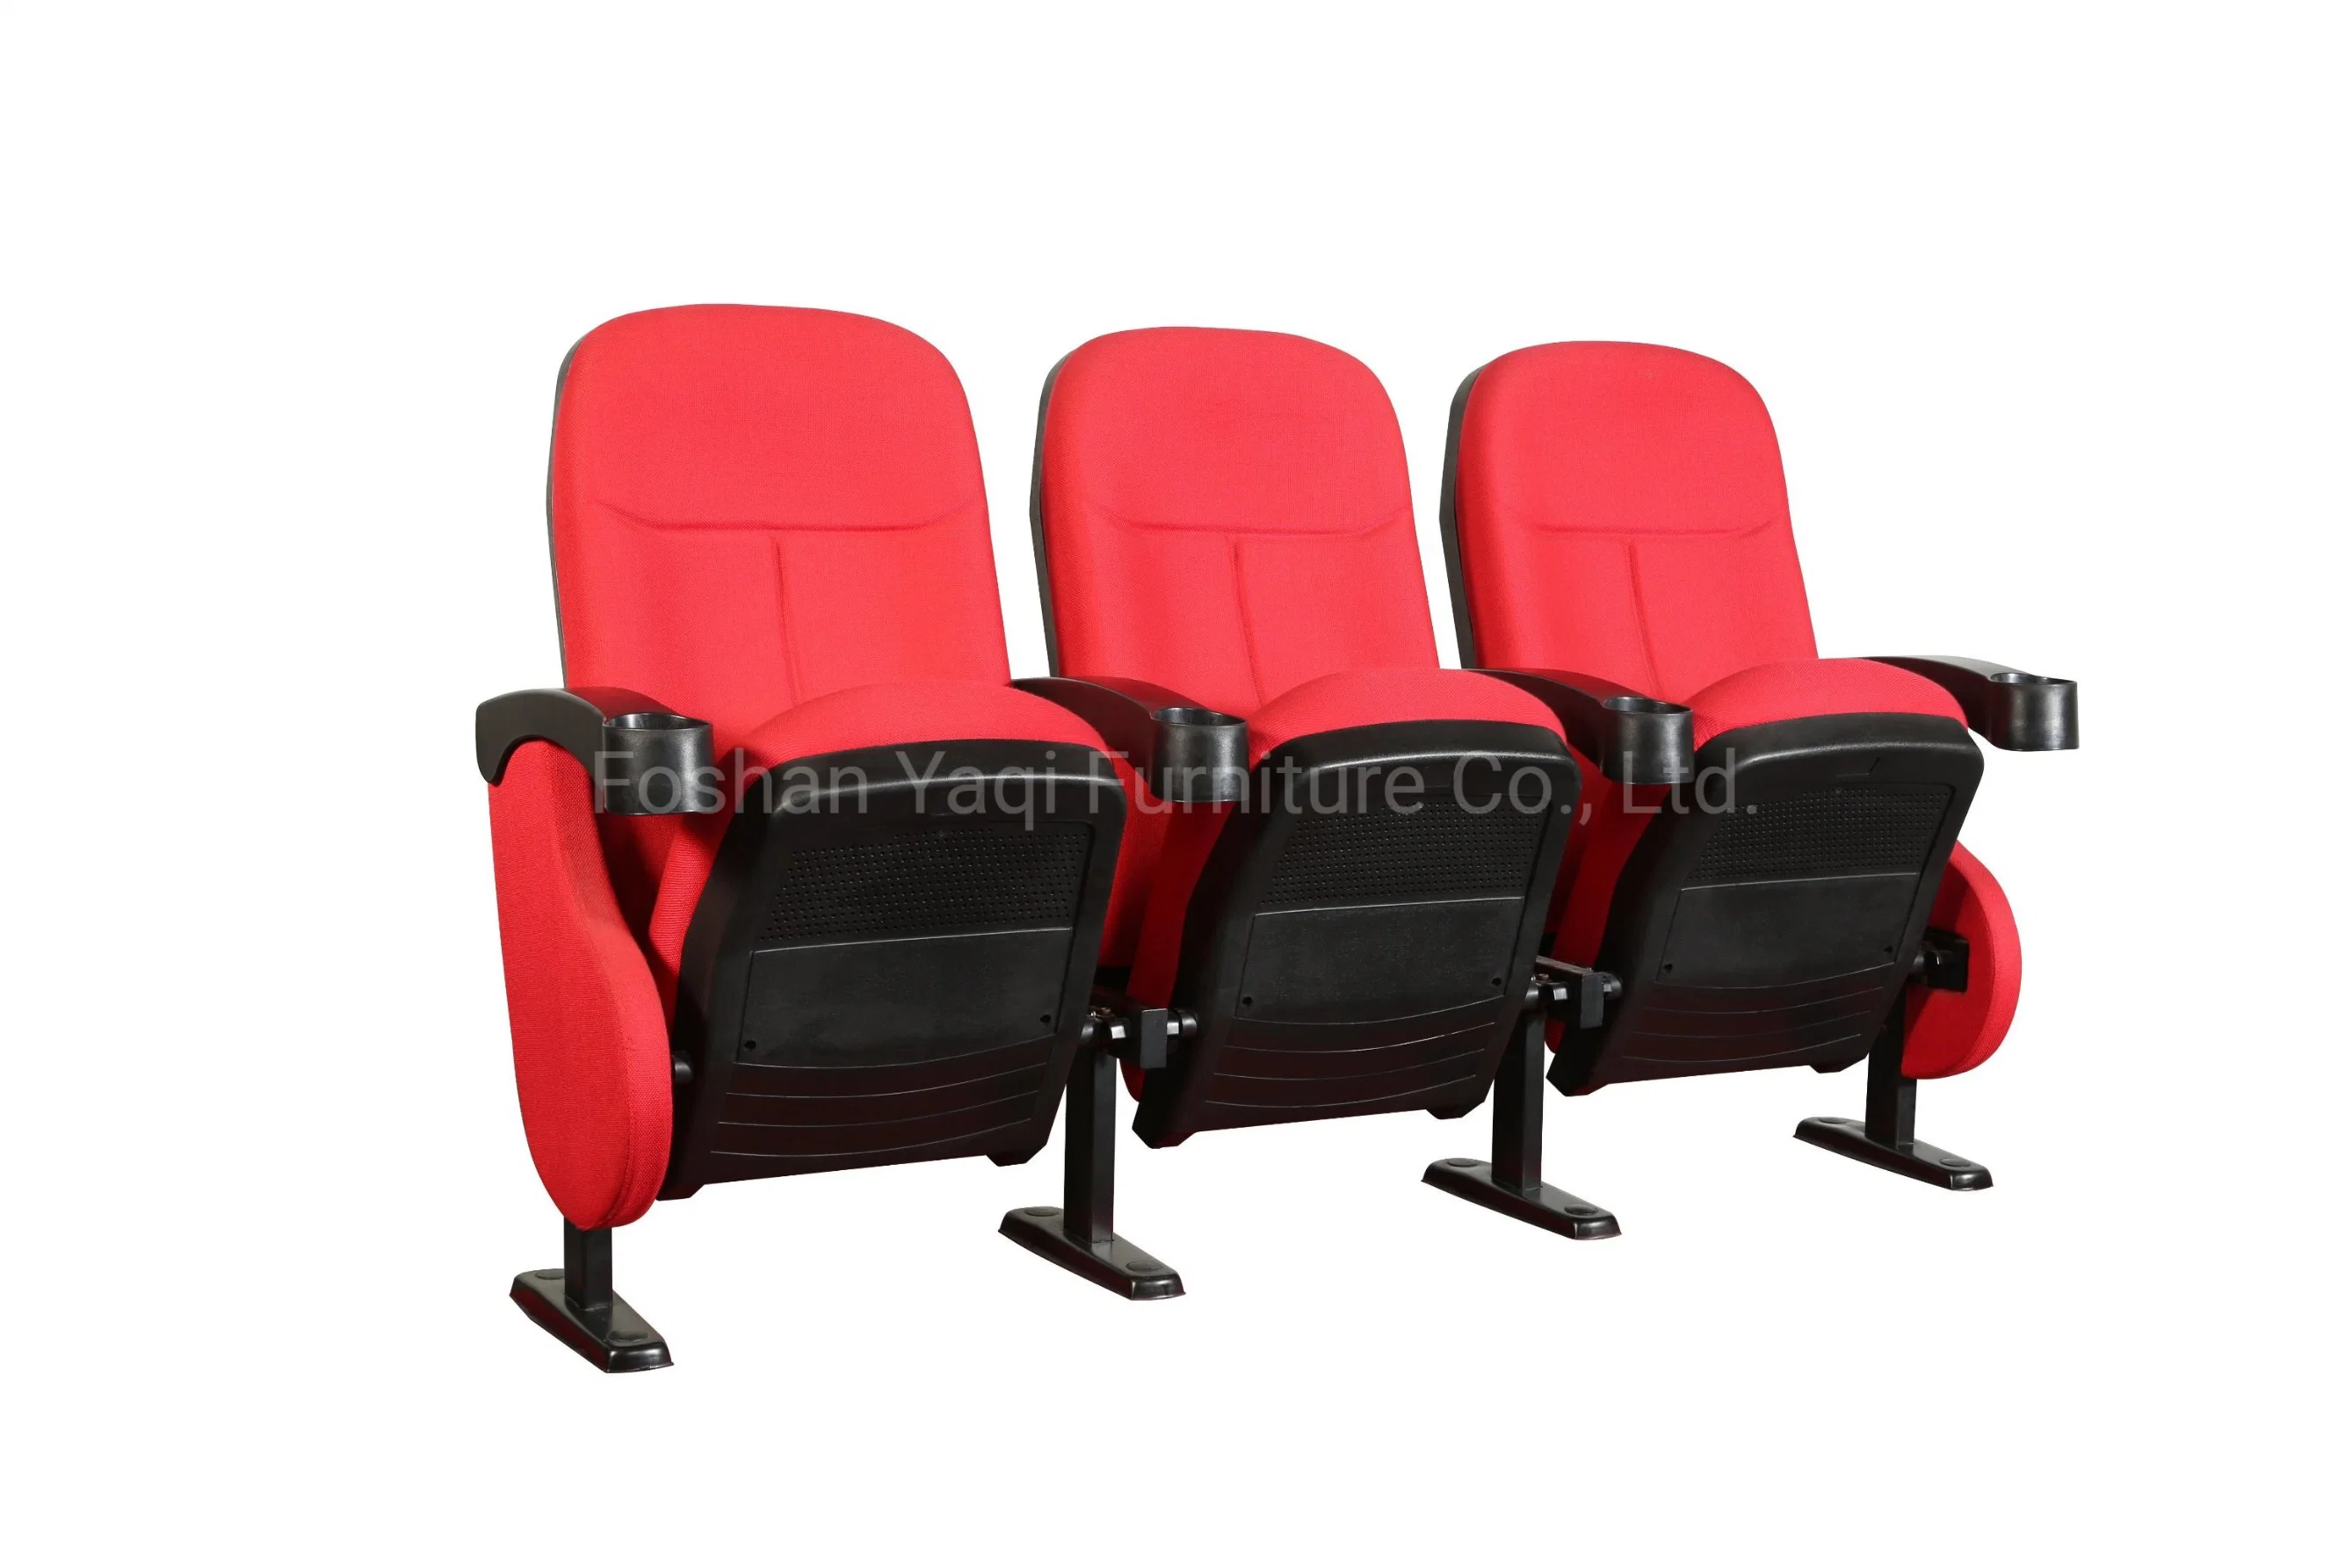 Chaise de conférence pliante pour mobilier de cinéma à domicile en métal, mobilier de théâtre, salle de conférence, chaises d'église, siège de chaise de théâtre (YA-07C)